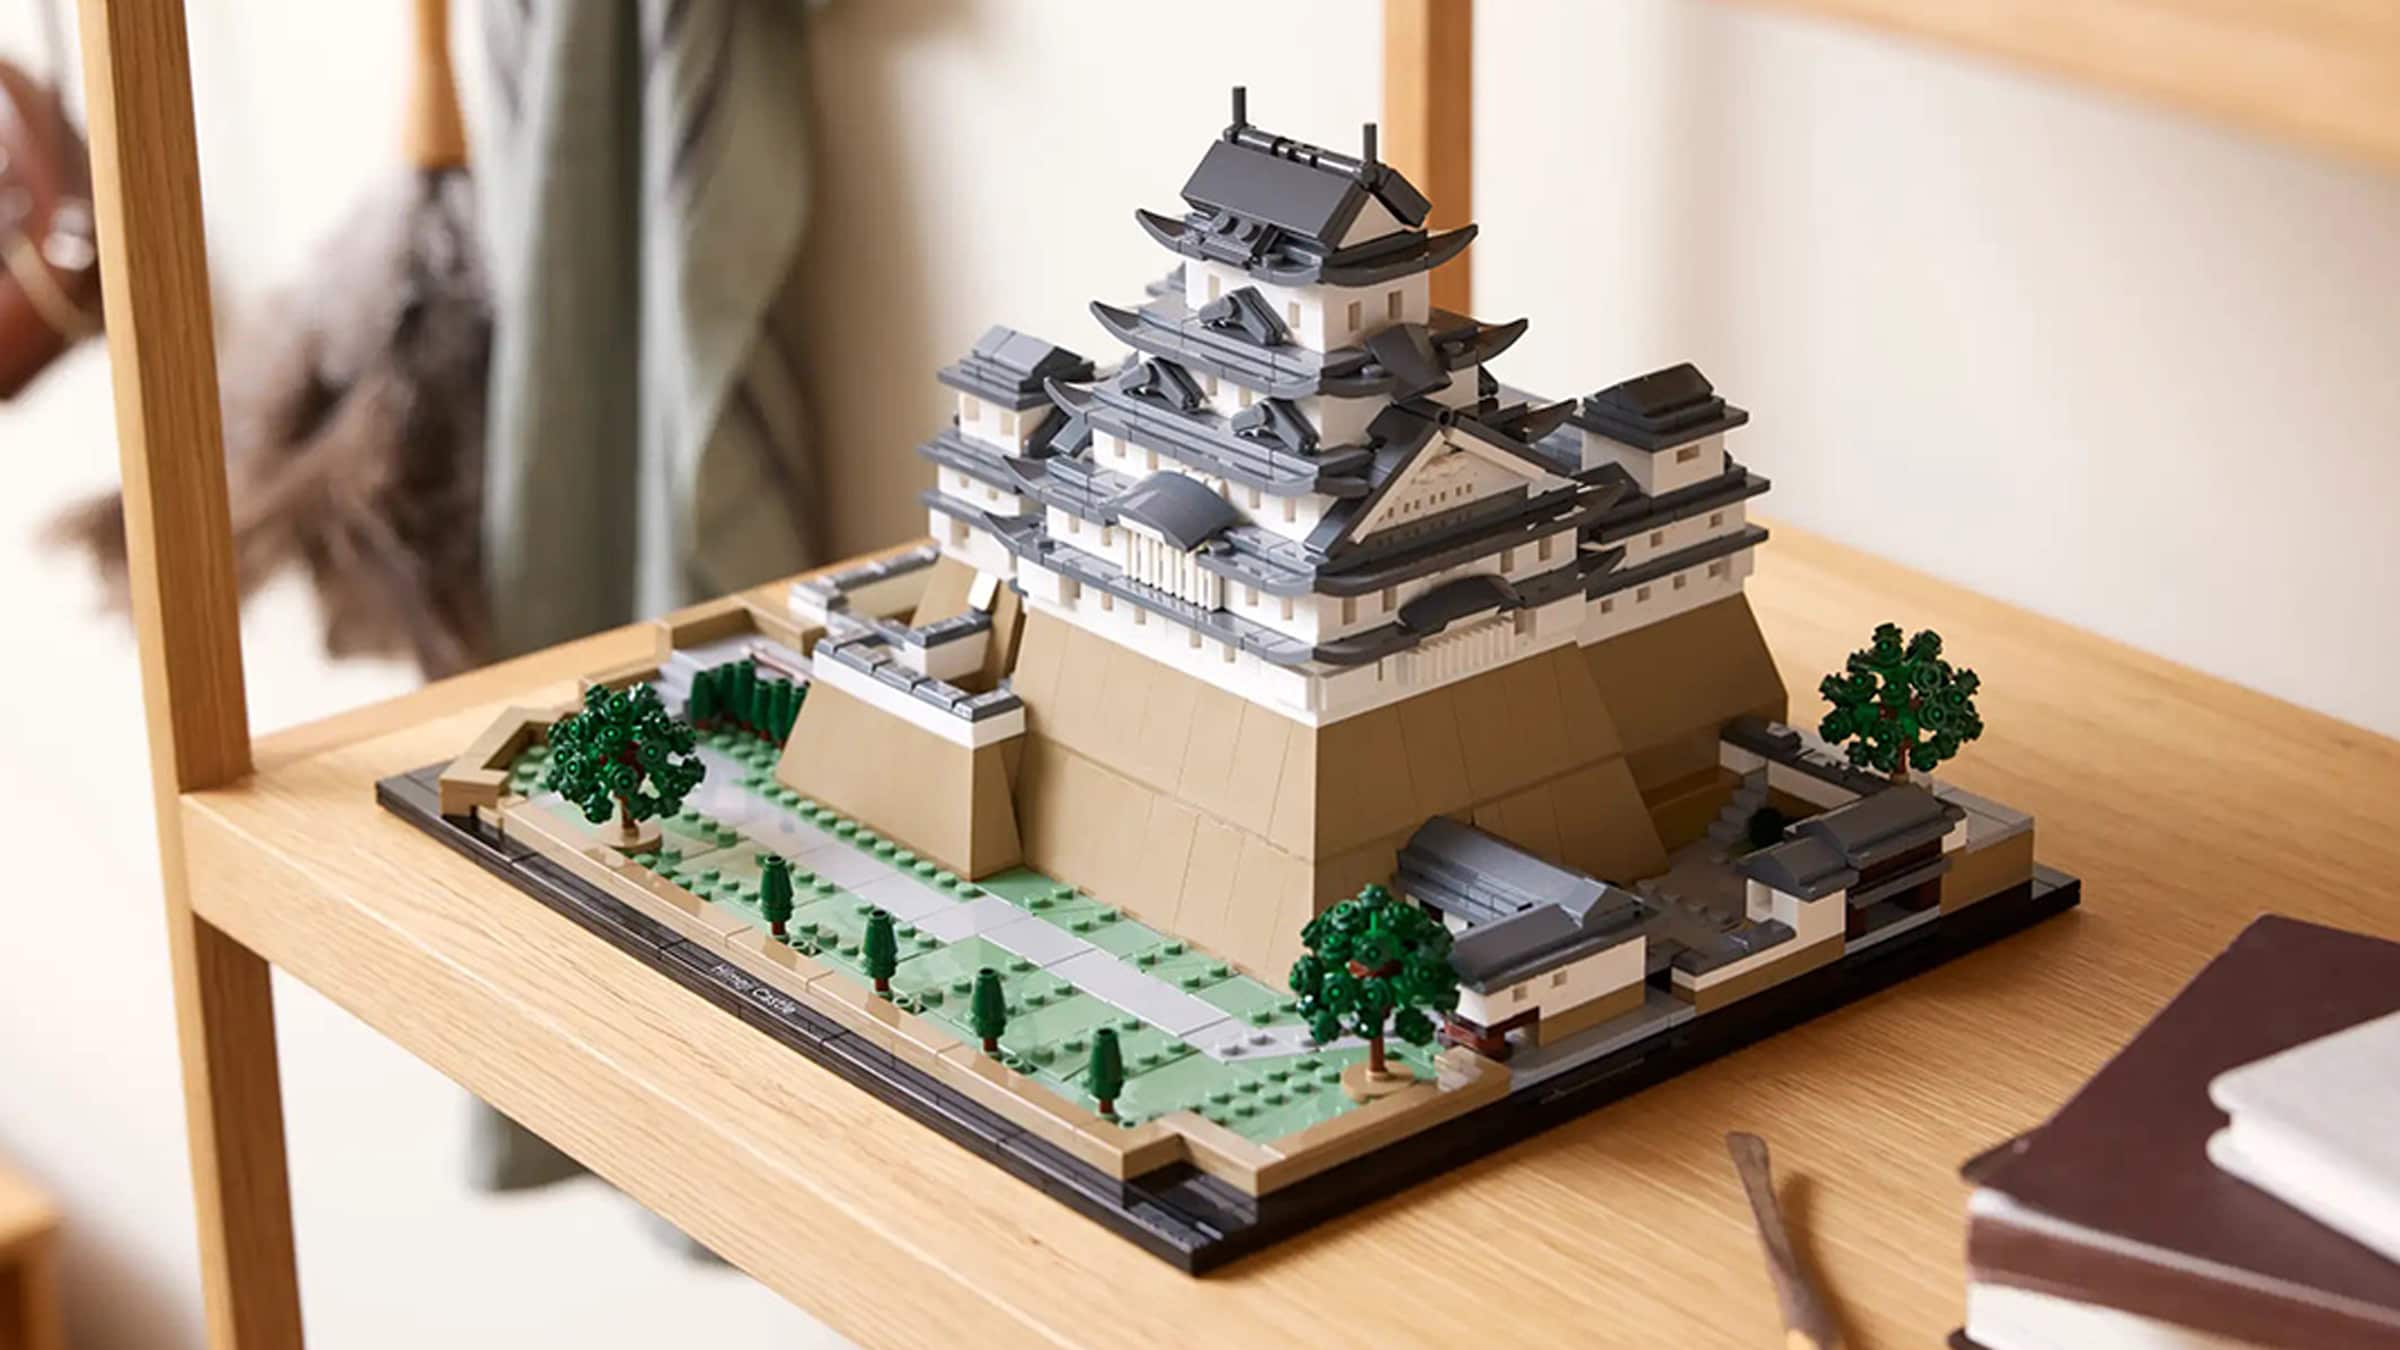 LEGO commercialise une réplique de 2125 pièces du château d'Himeji